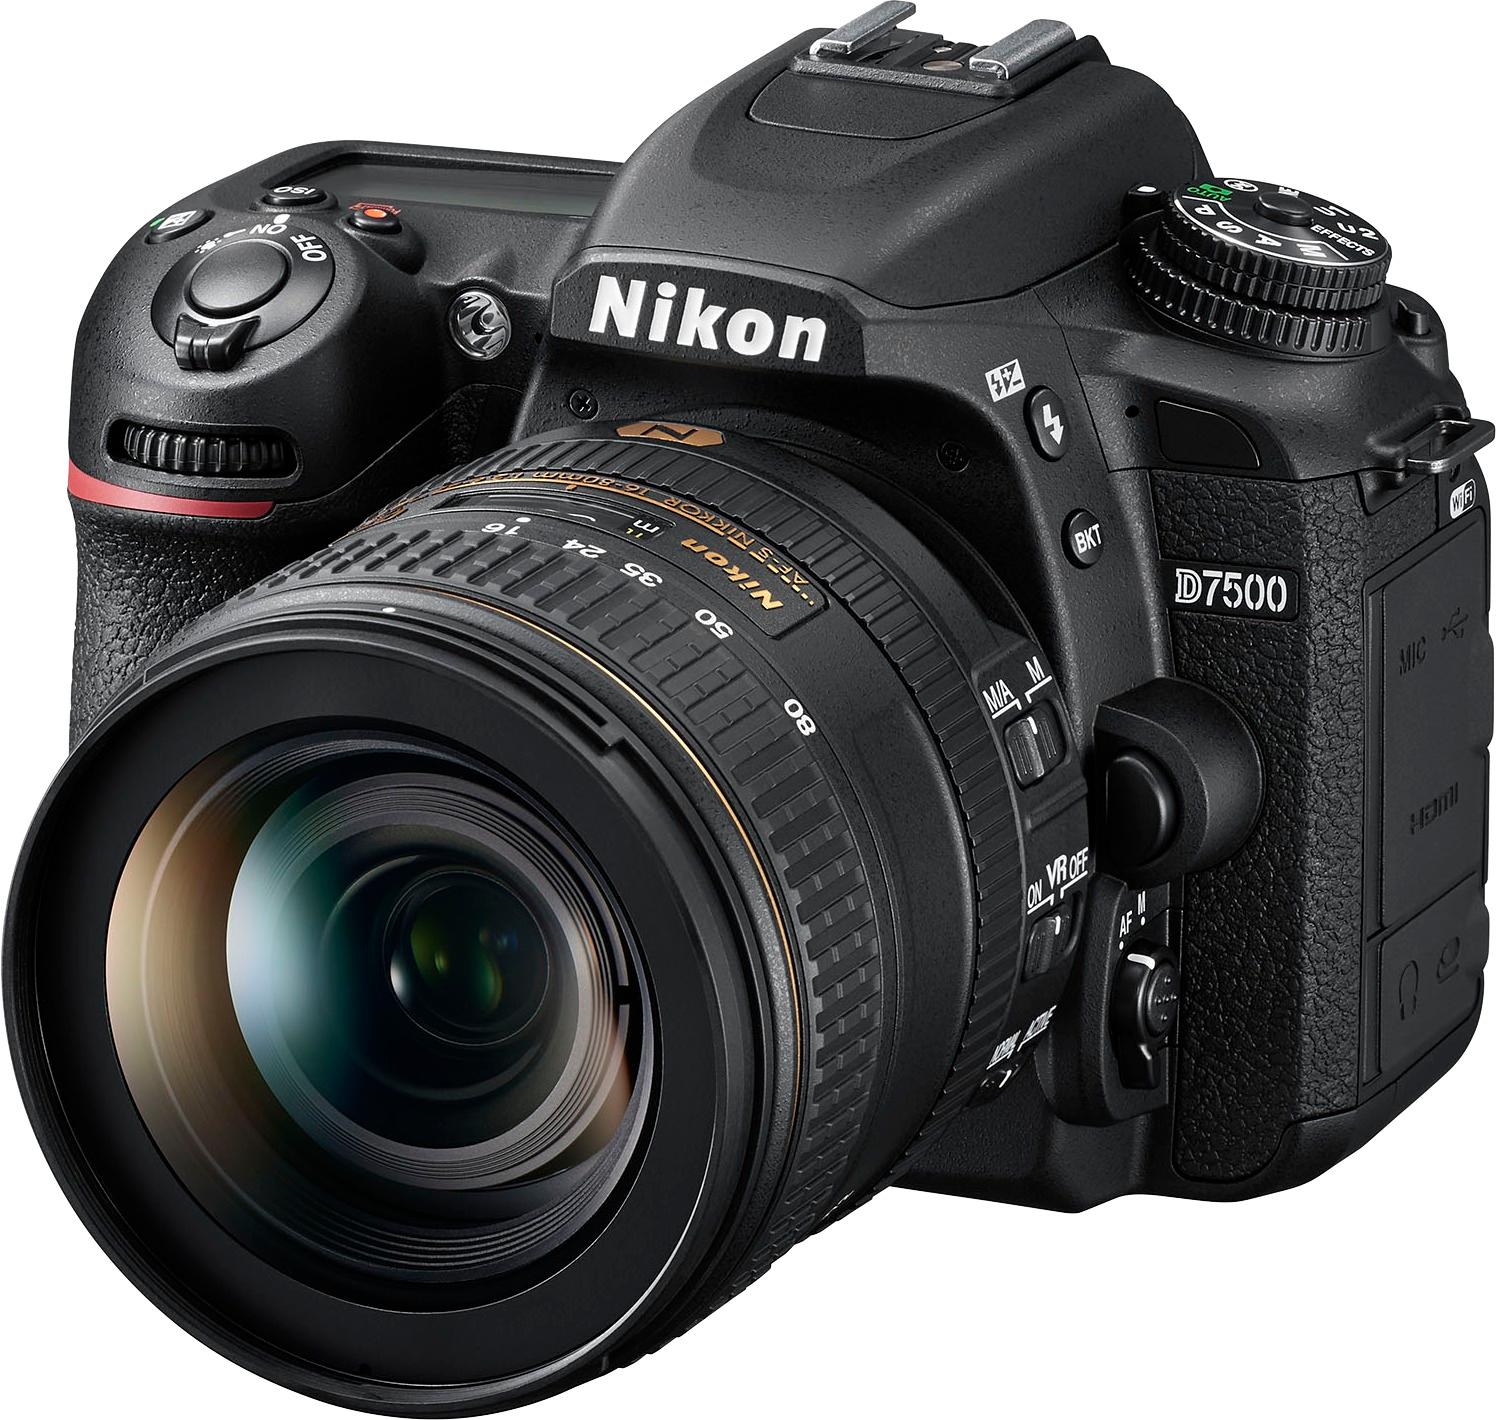 Nikon D7500 DSLR Camera with AF-S DX NIKKOR 16-80mm f/2.8-4E ED VR lens Black 13535 - Best Buy